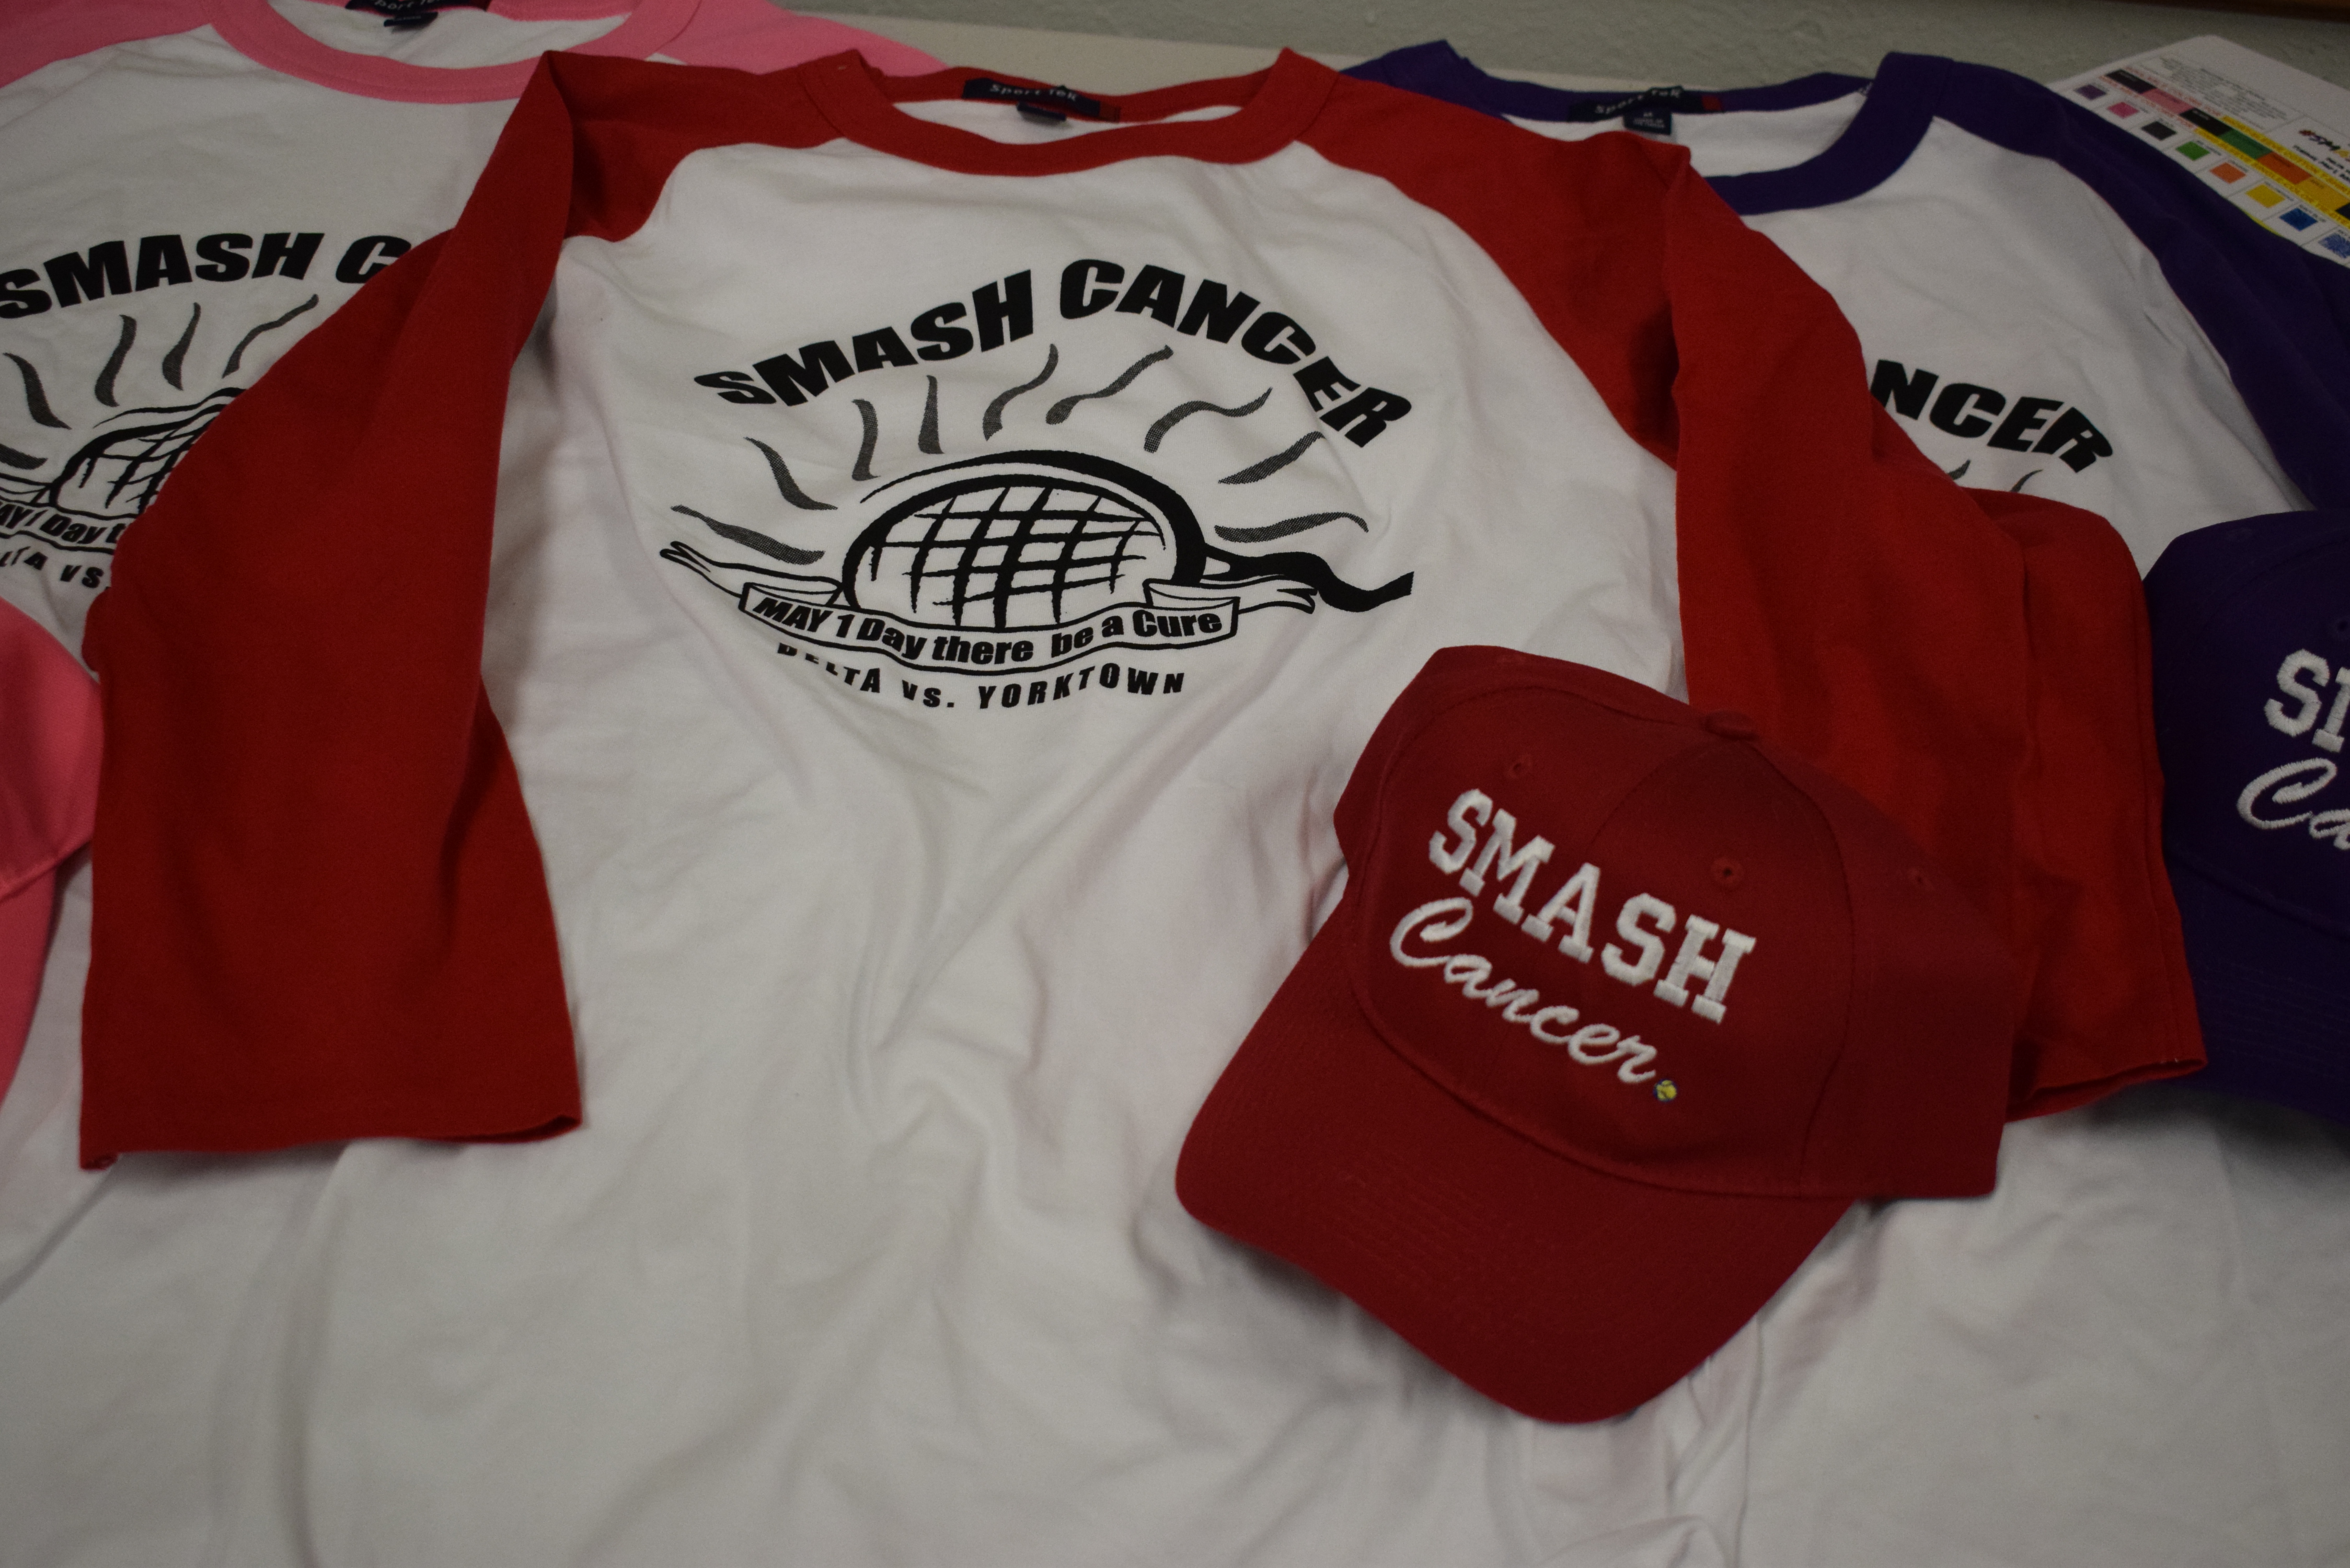 Smash shirts